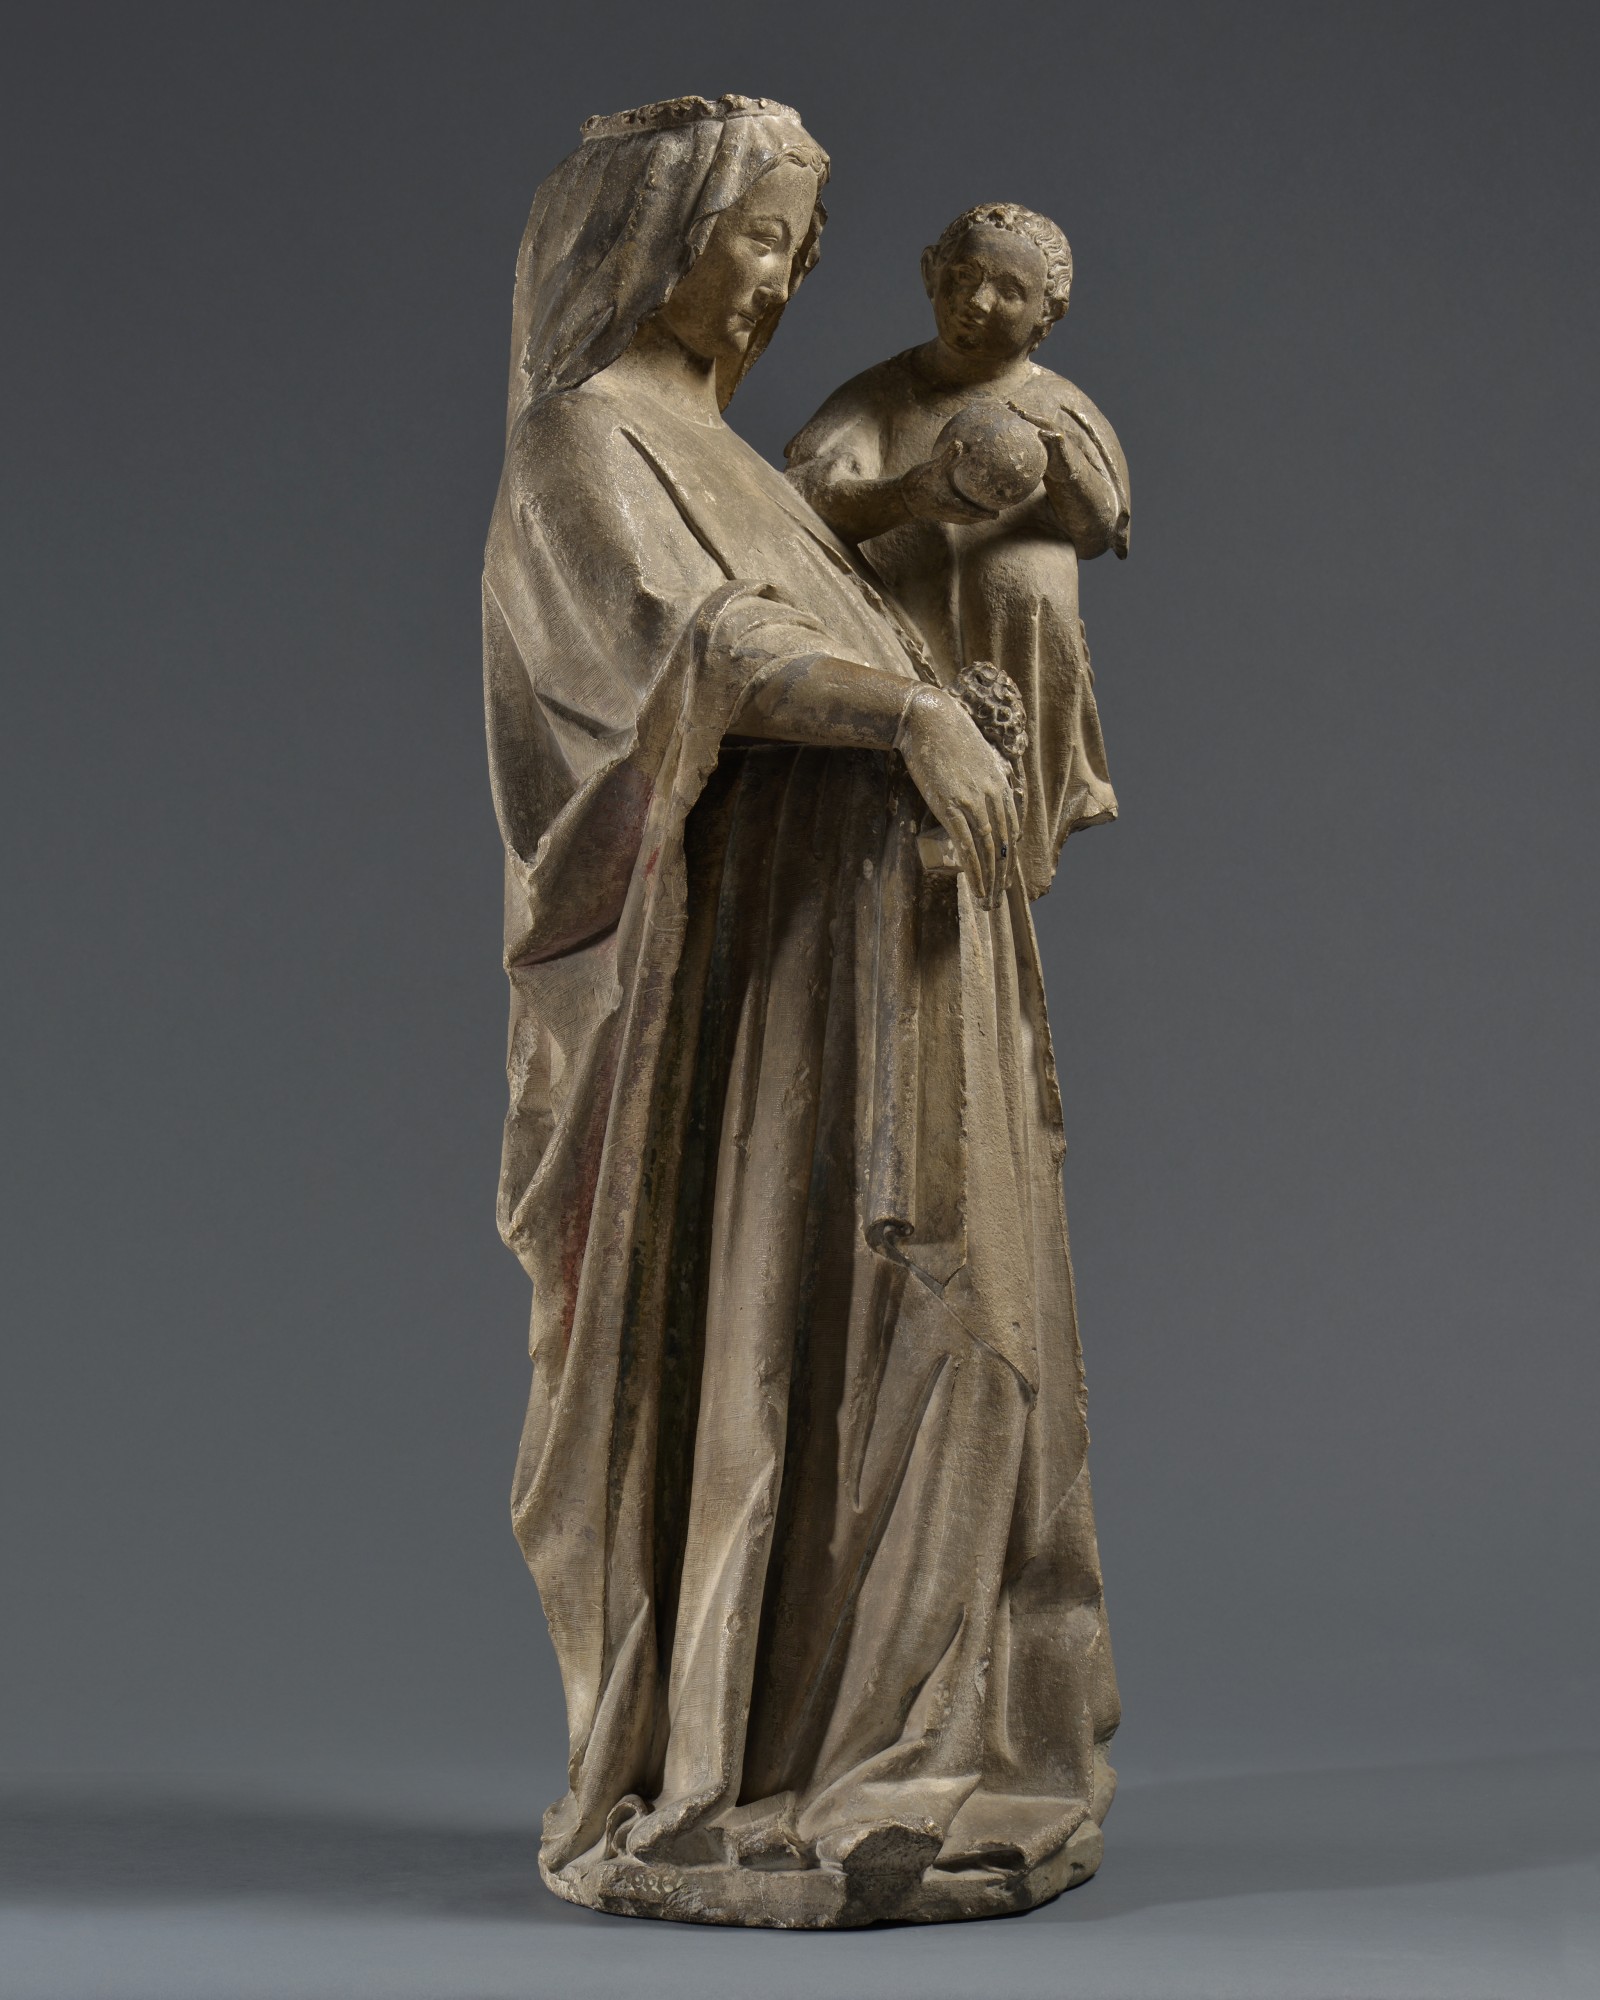 Virgin and Child, France, Mussy sur Seine (Aube), c. 1300 – 1325